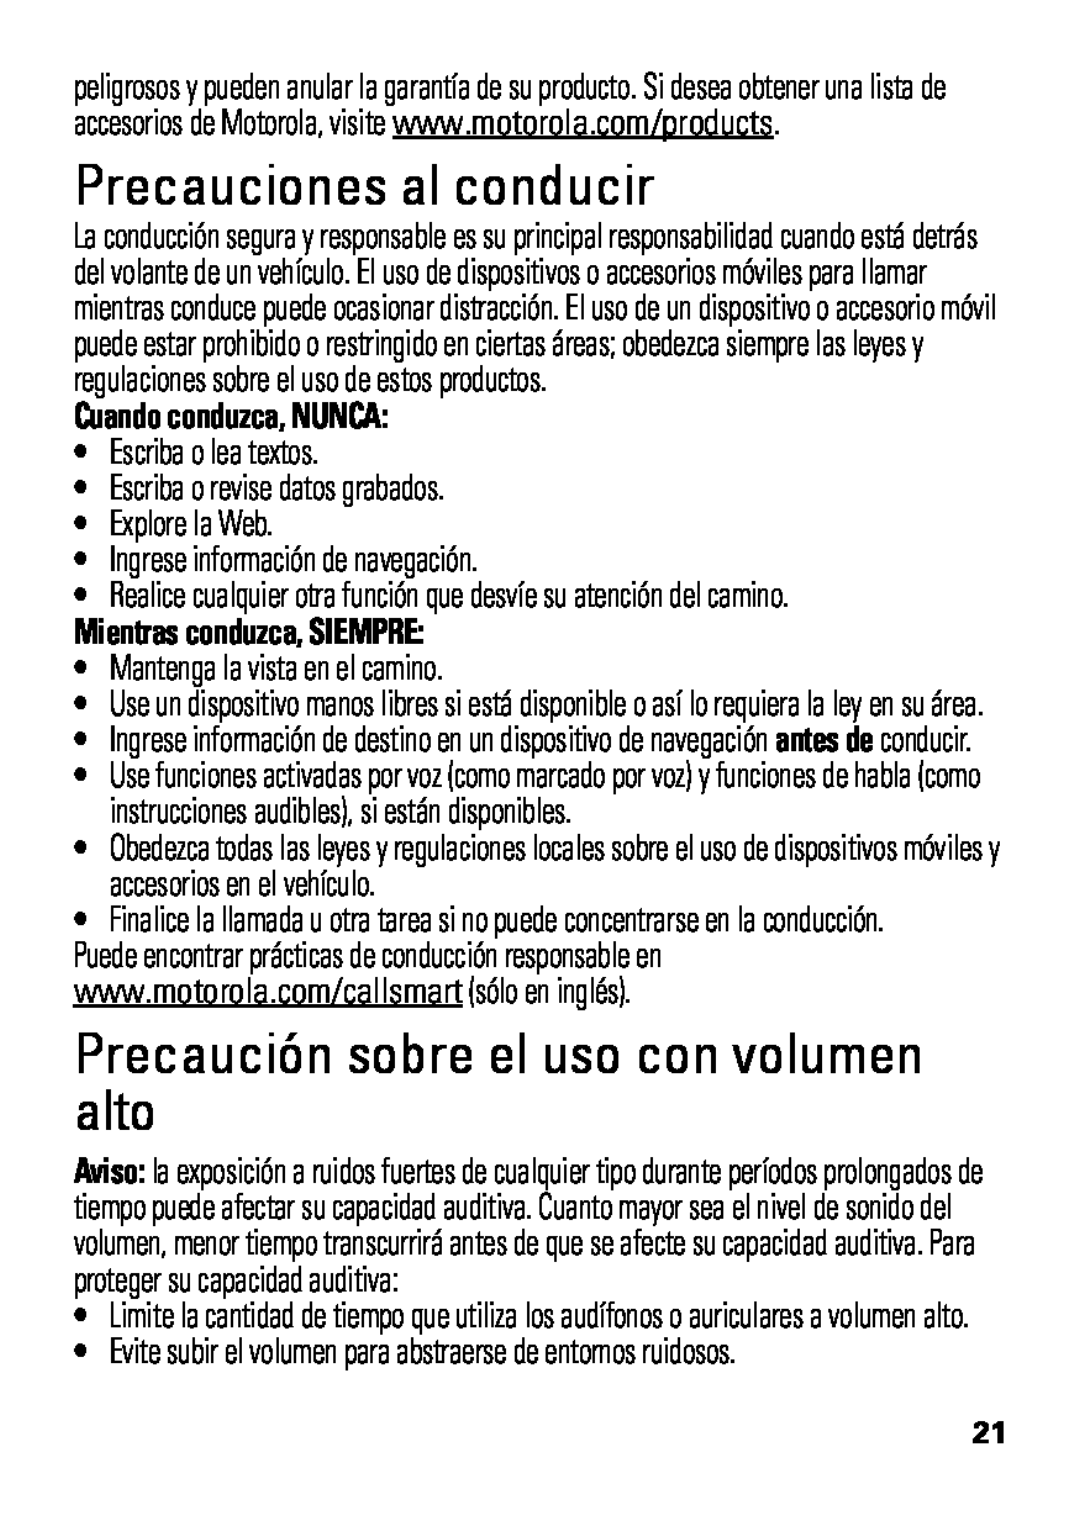 Motorola HX550 manual Precauciones al conducir, Precaución sobre el uso con volumen alto, Cuando conduzca, NUNCA 